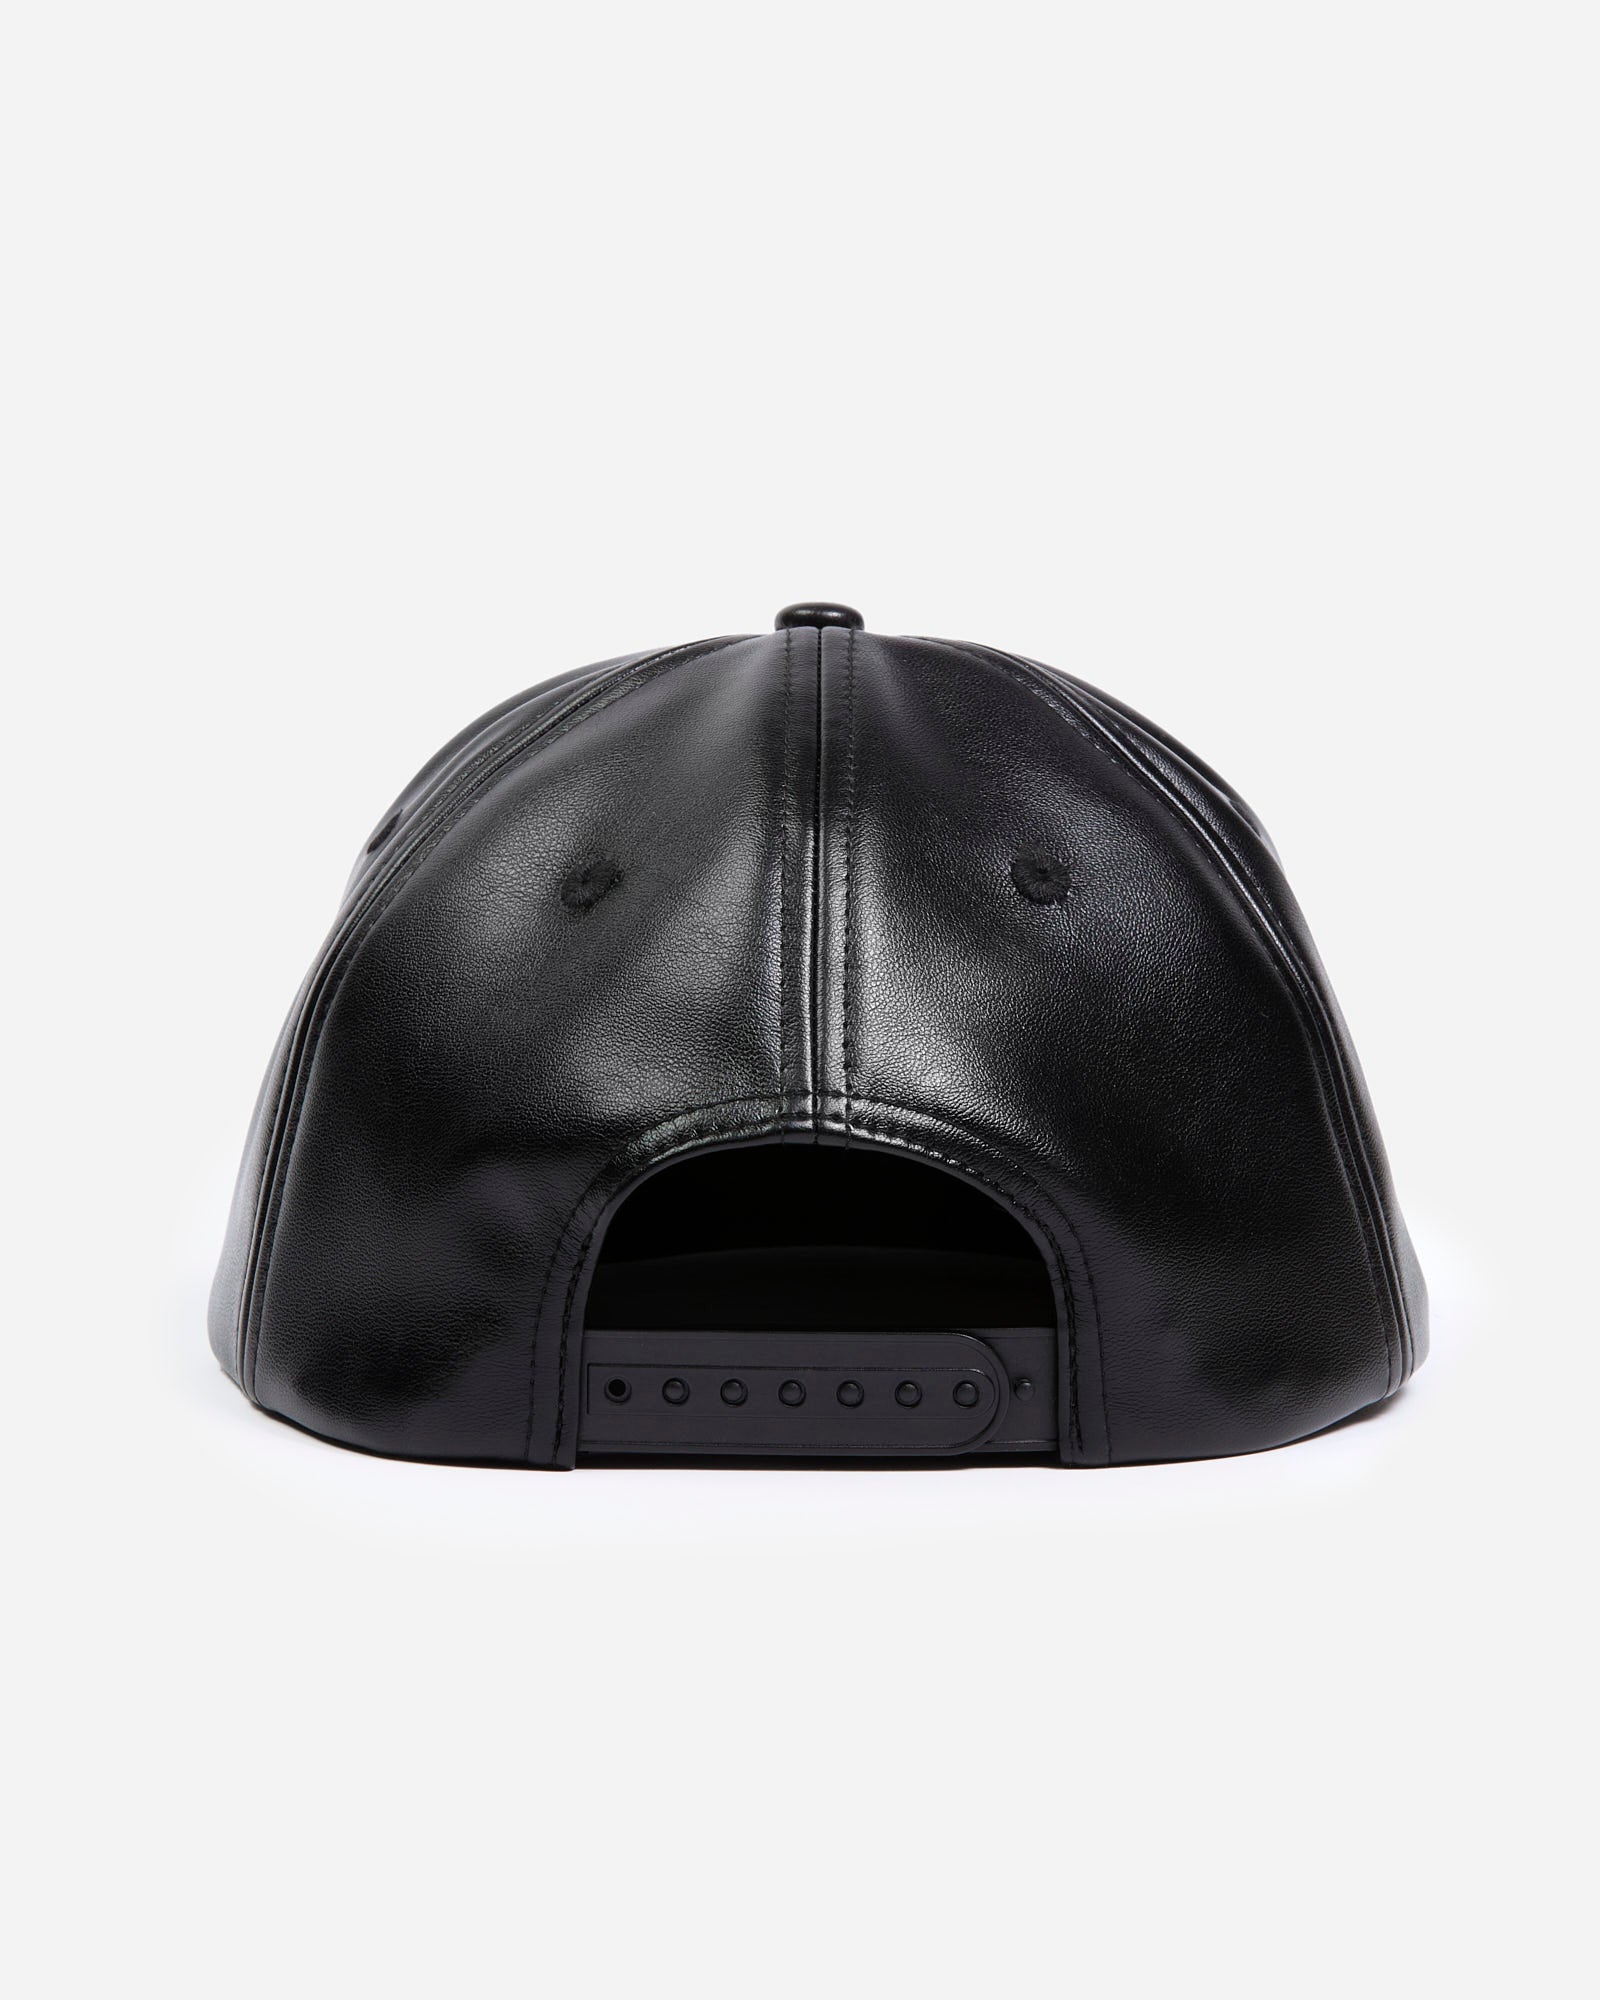 ATCQ Faux Leather Black Hat | ATCQ Official